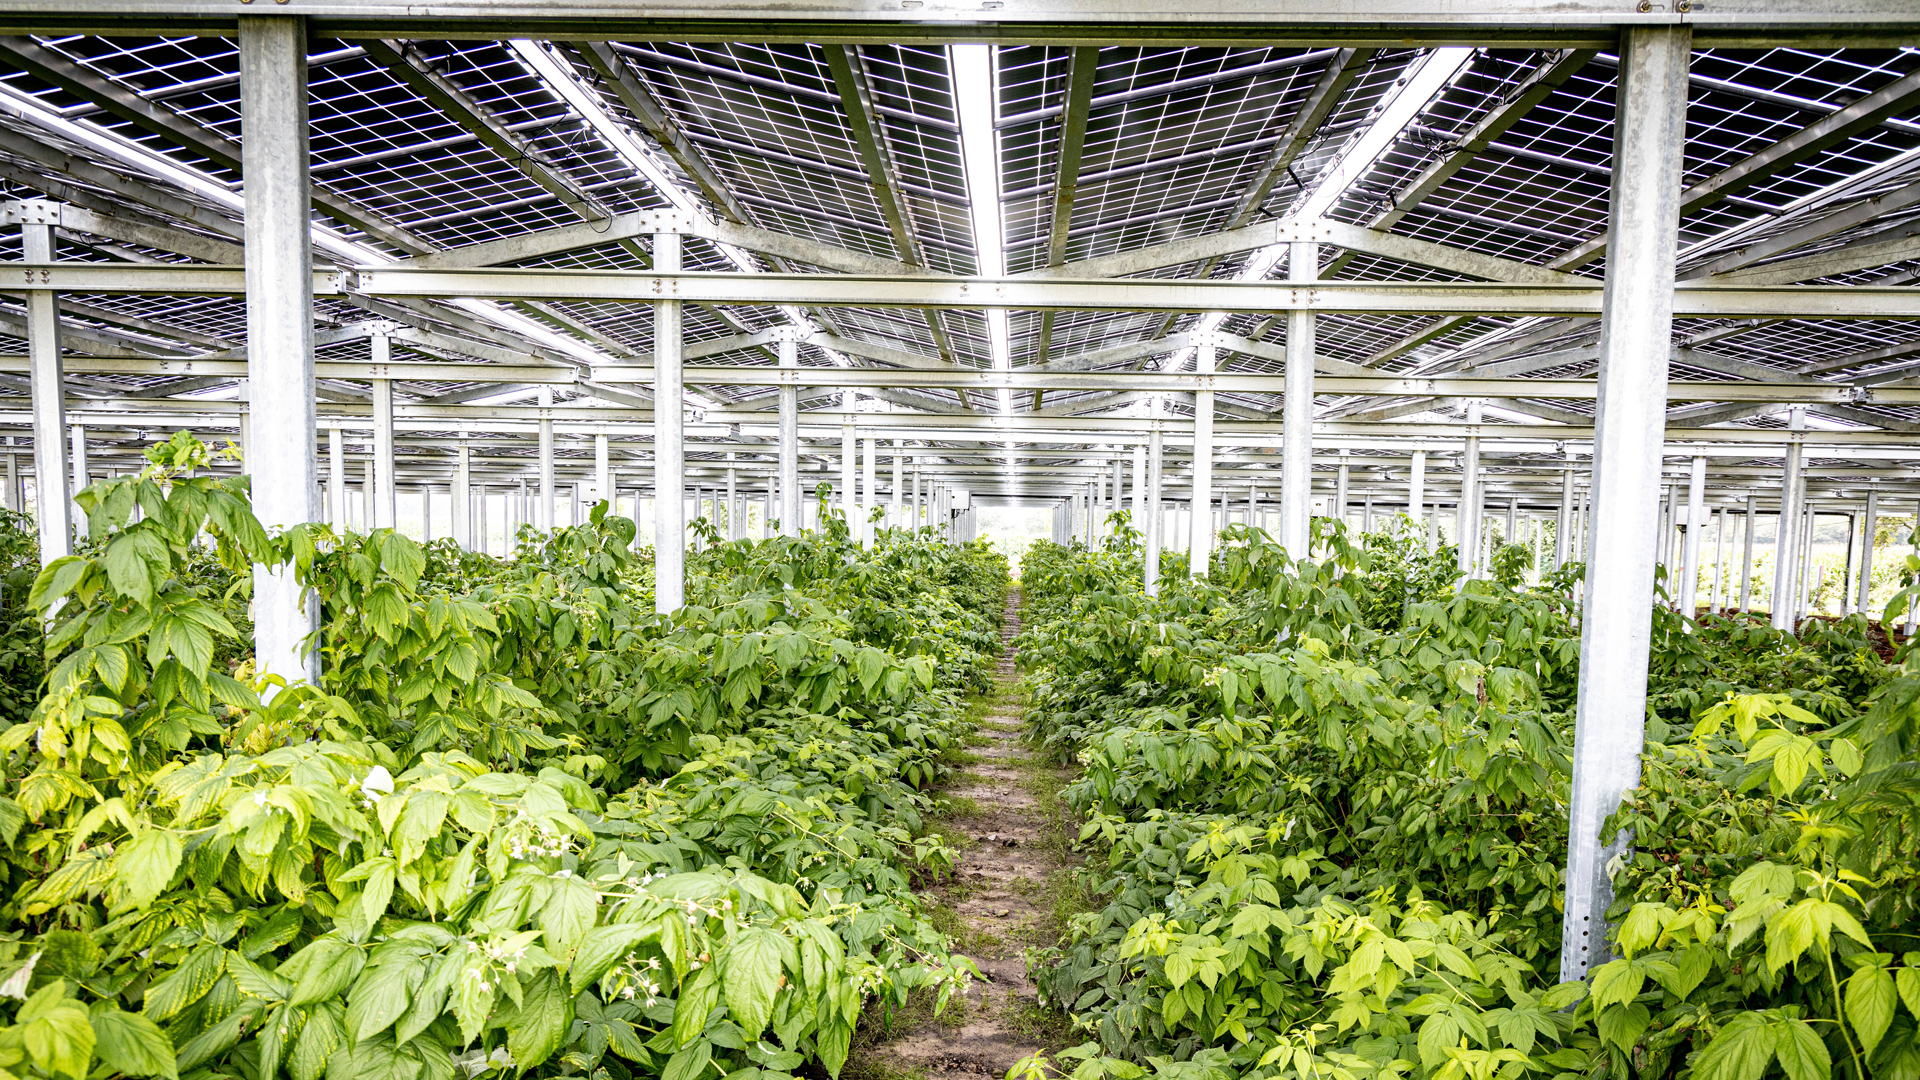 Beerenobstplantage in innovativem Agri-Photovoltaik Gewächshaus in Nordrhein-Westfalen.